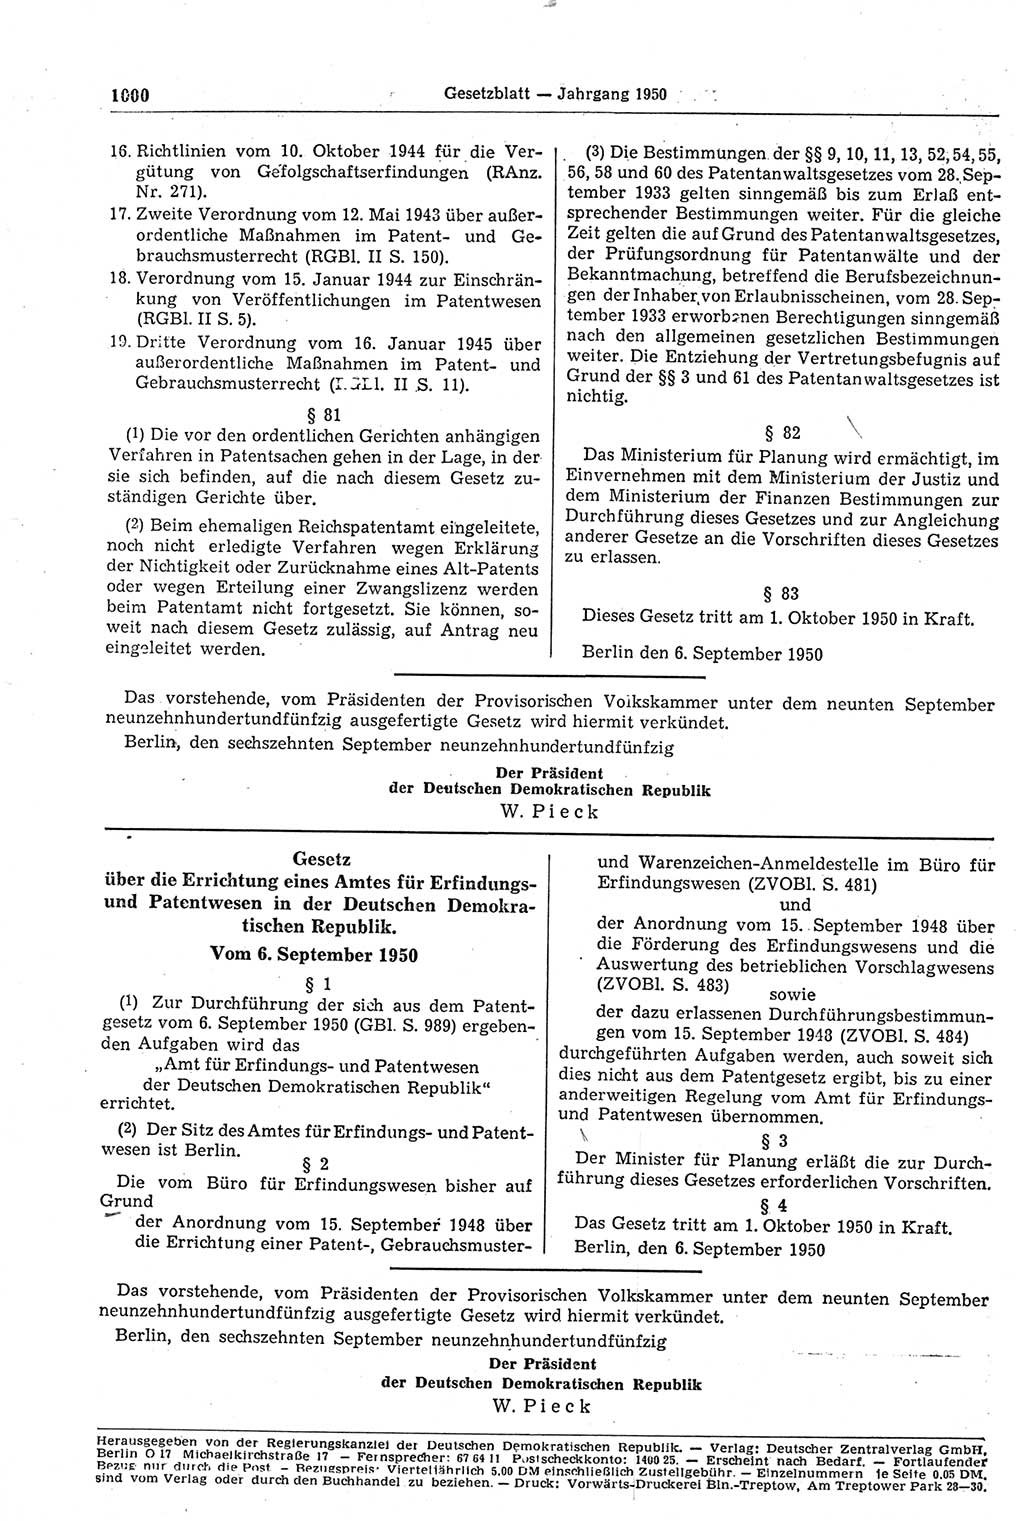 Gesetzblatt (GBl.) der Deutschen Demokratischen Republik (DDR) 1950, Seite 1000 (GBl. DDR 1950, S. 1000)